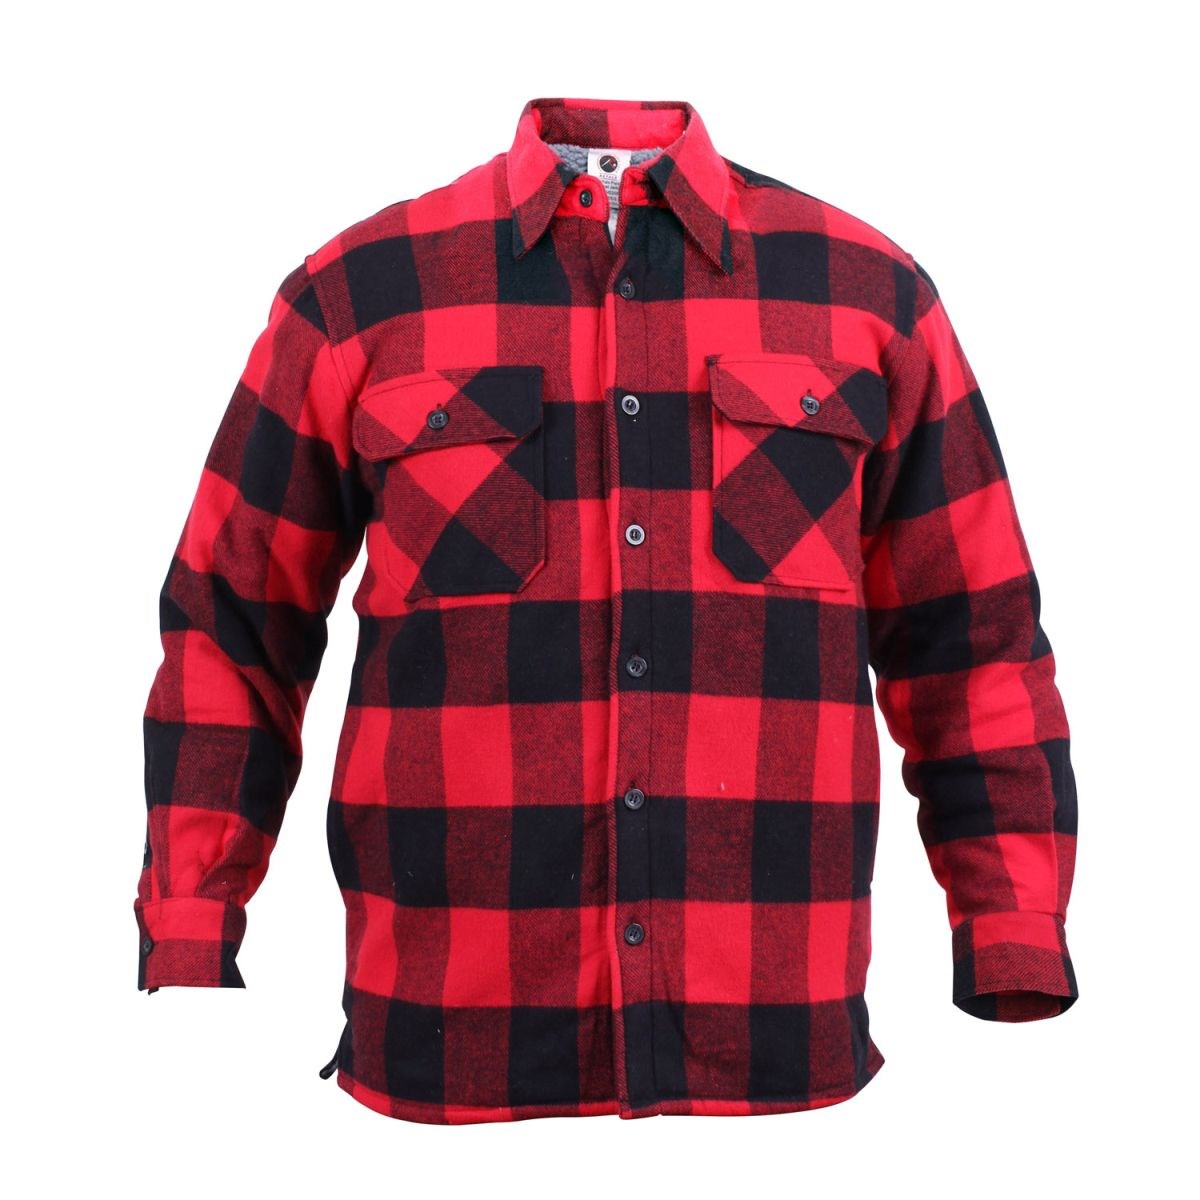 Lumberjack plaid shirt warm RED ROTHCO 3739RED L-11